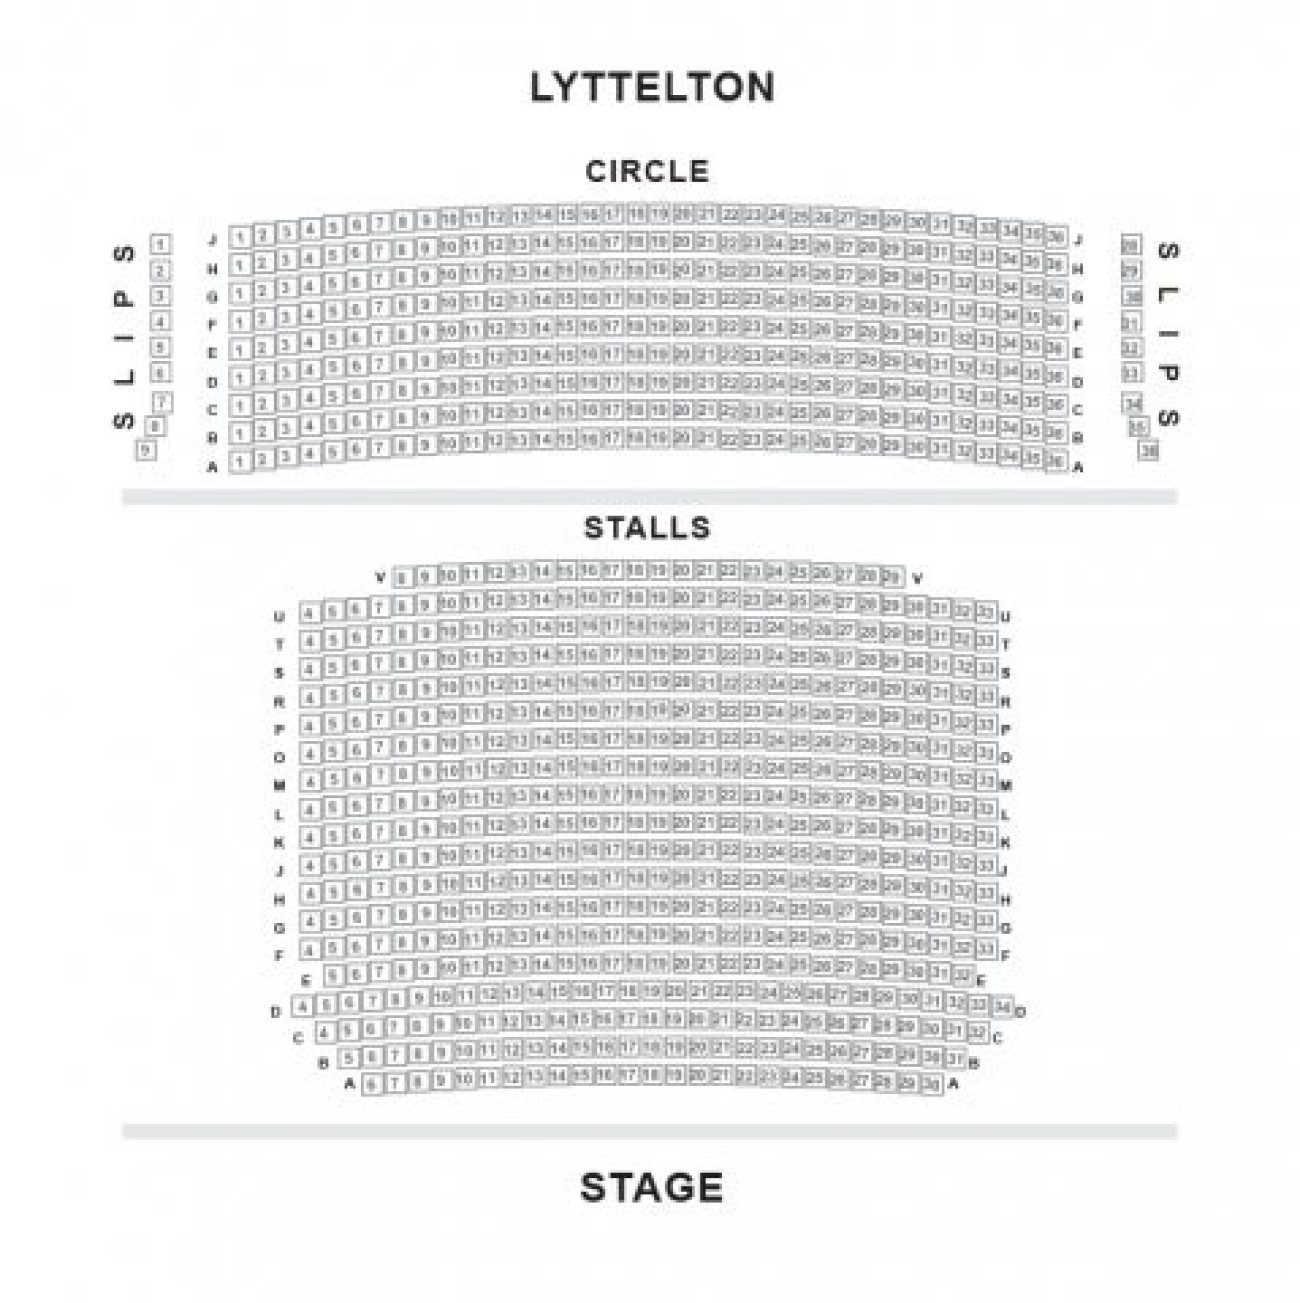 Lyttelton - National Theatre Seating plan